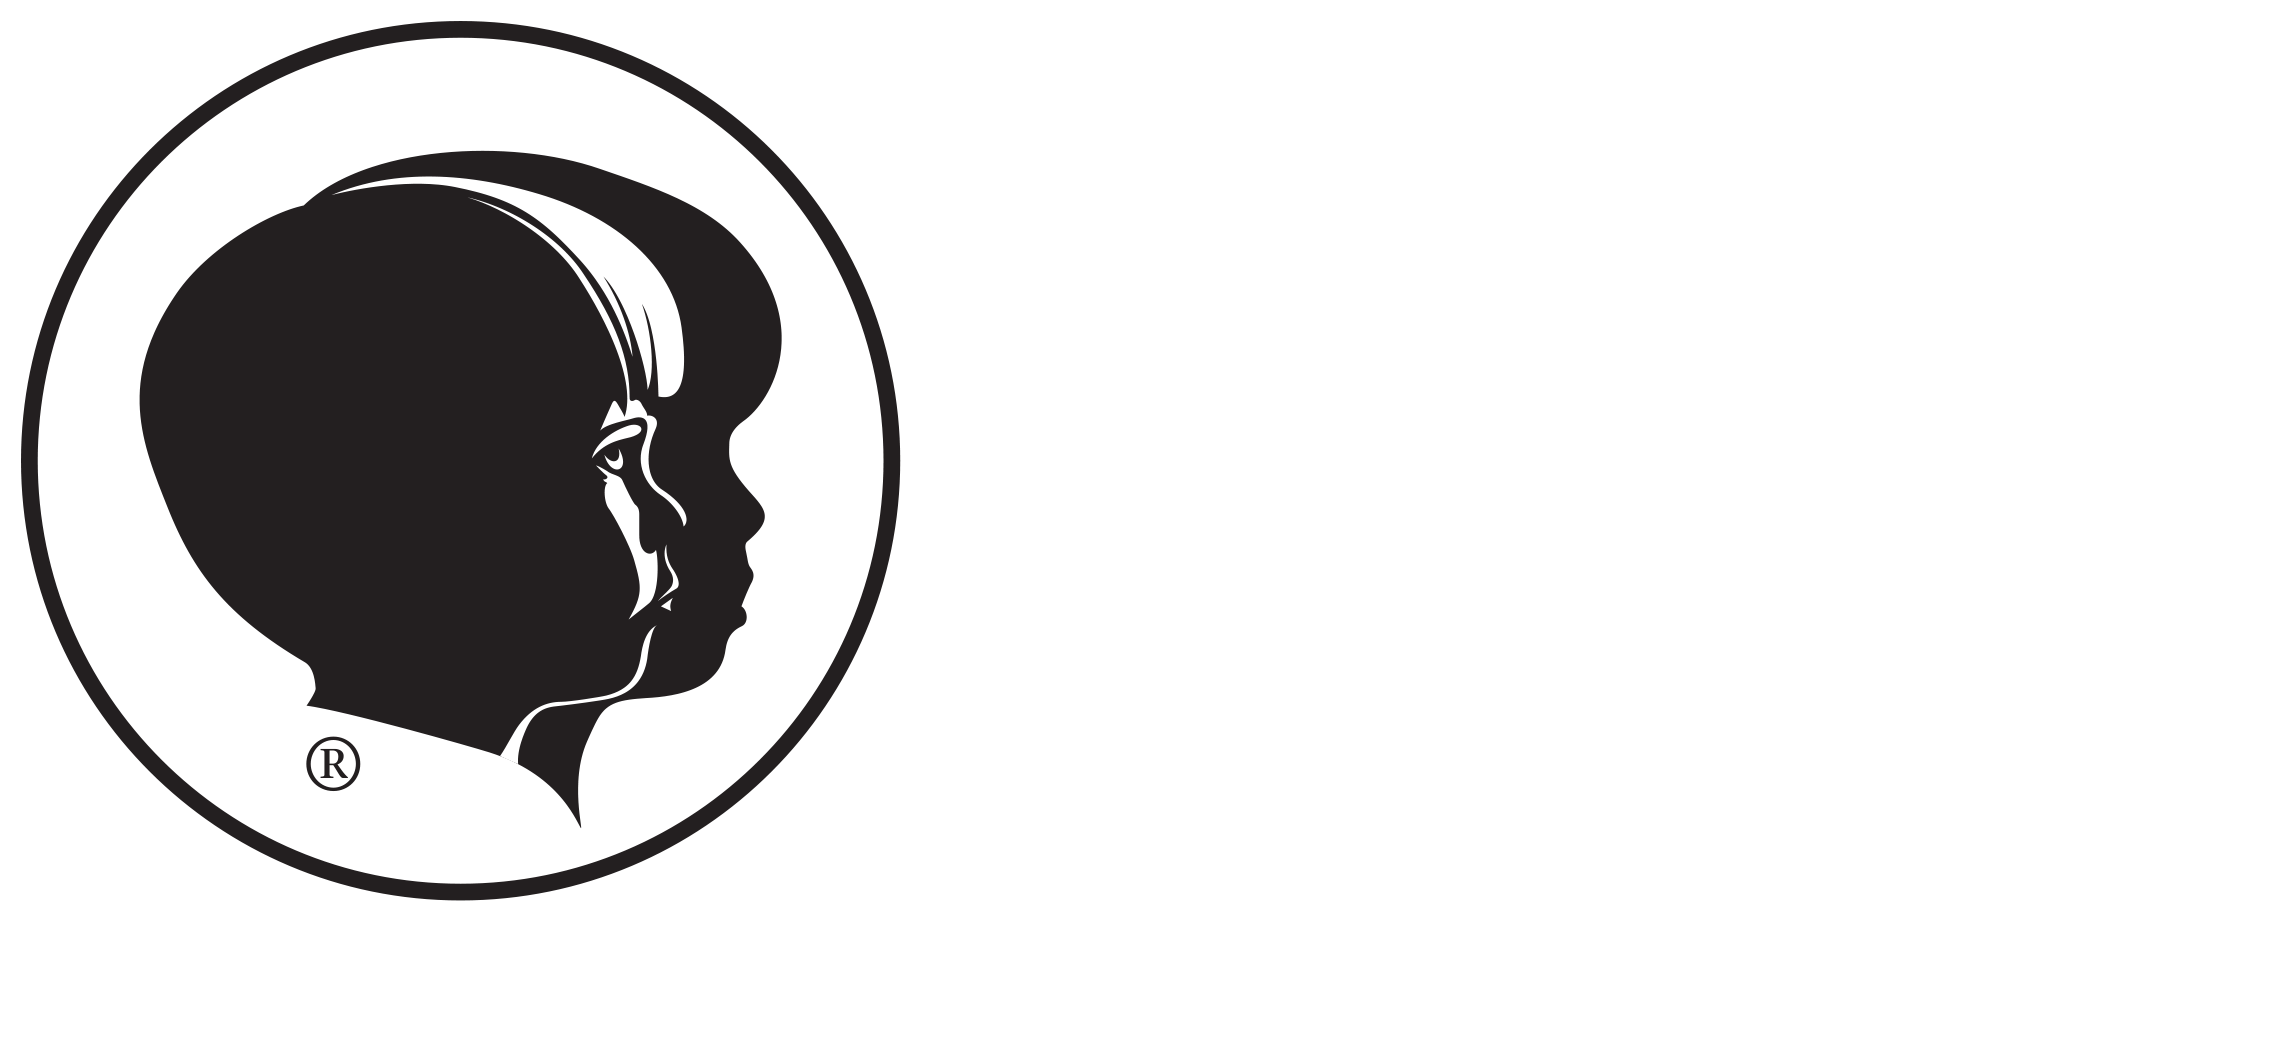 August 23, 2018 / - Child Evangelism Fellowship (2329x1066)